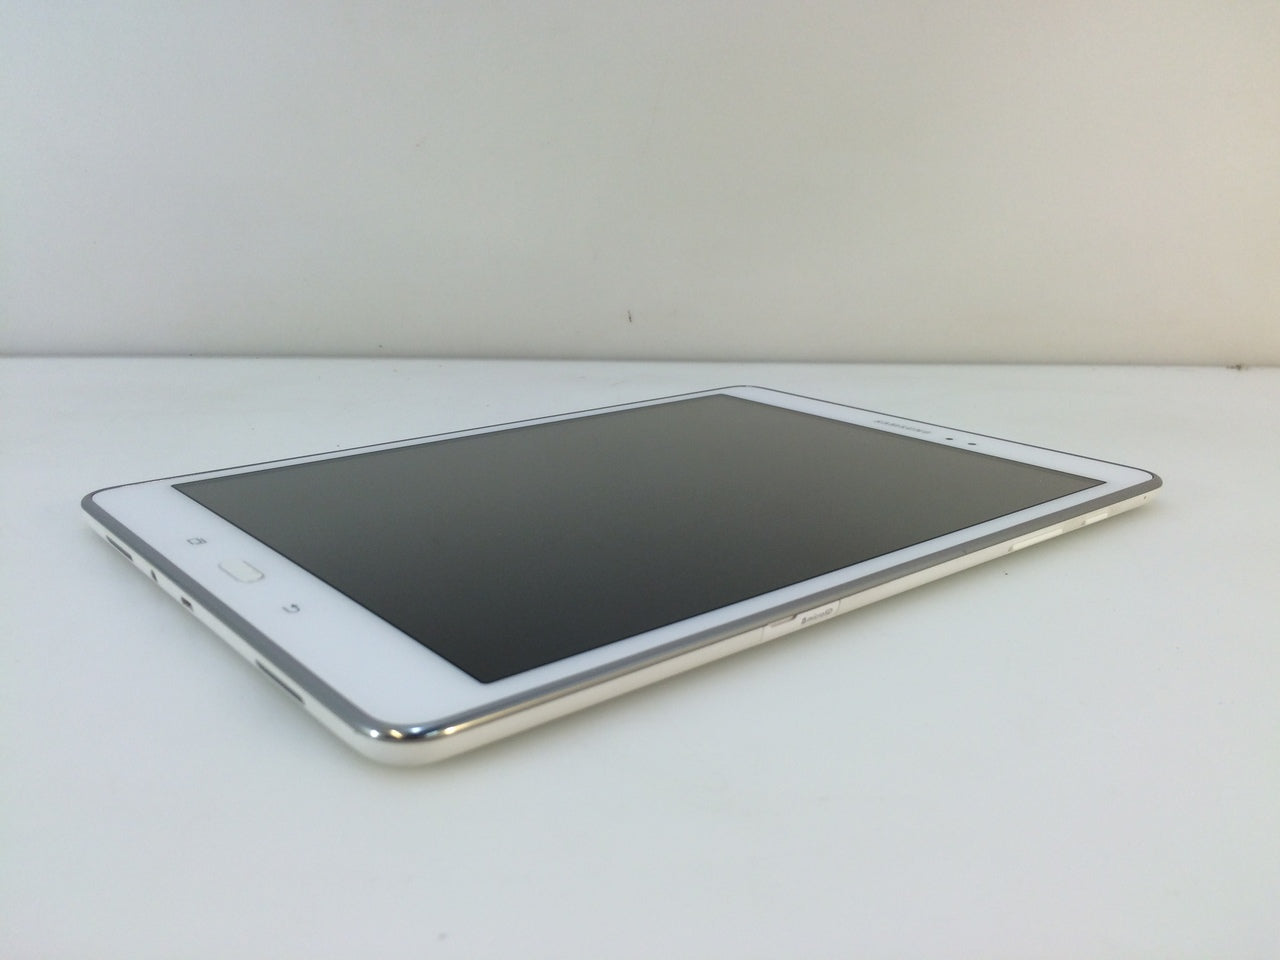 Galaxy Tab A 9.7 16GB (Wi-Fi) Tablets - SM-T550NZWAXAR